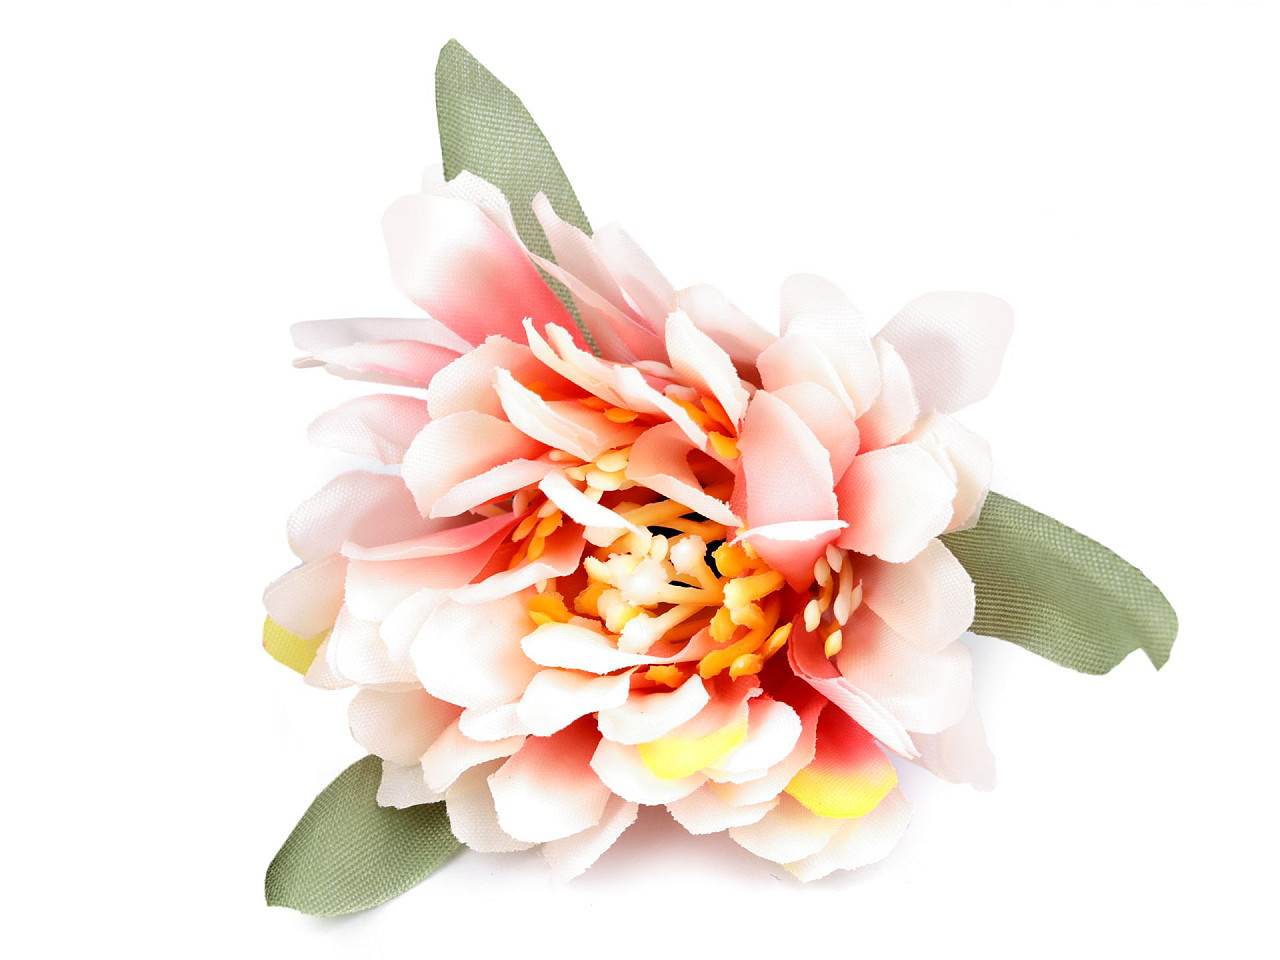 Umělý květ Ø6 cm, barva 3 pudrovo-lososová